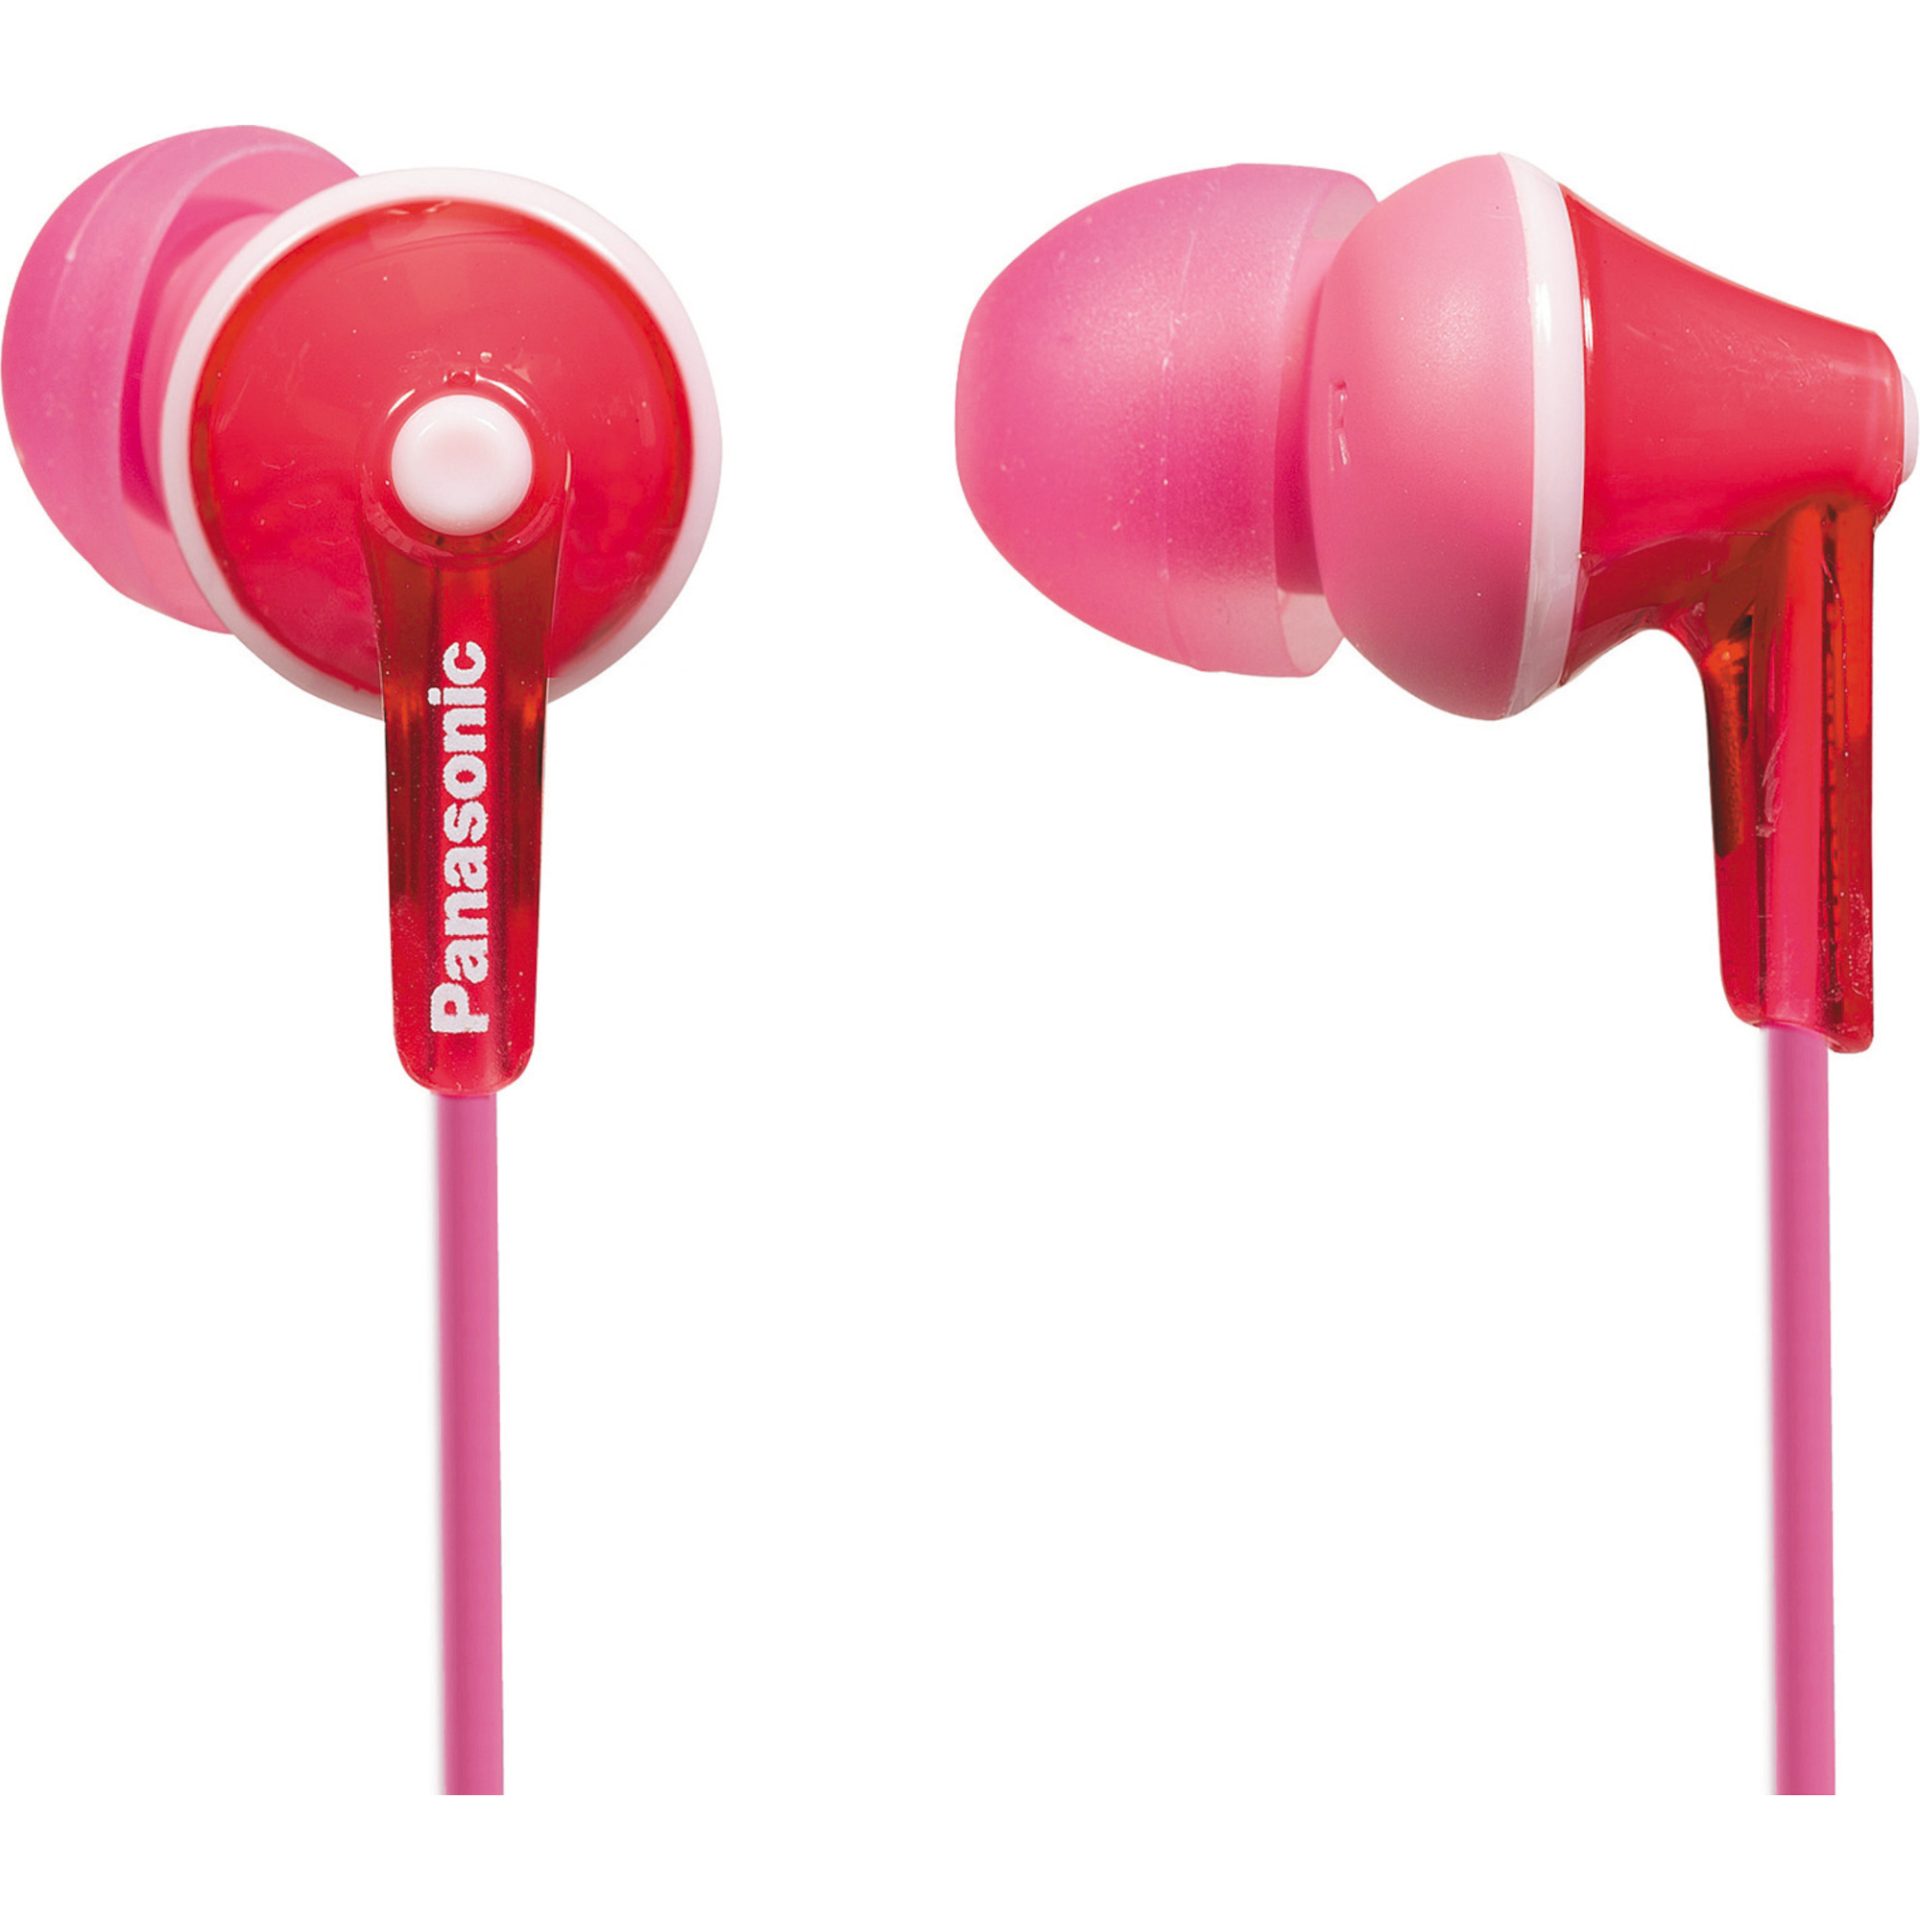 Panasonic RP-HJE125 kabelová sluchátka do uší (9mm měniče, design ErgoFit, 3 páry měkkých sluchátek, kabel délky 1,1m), růžová